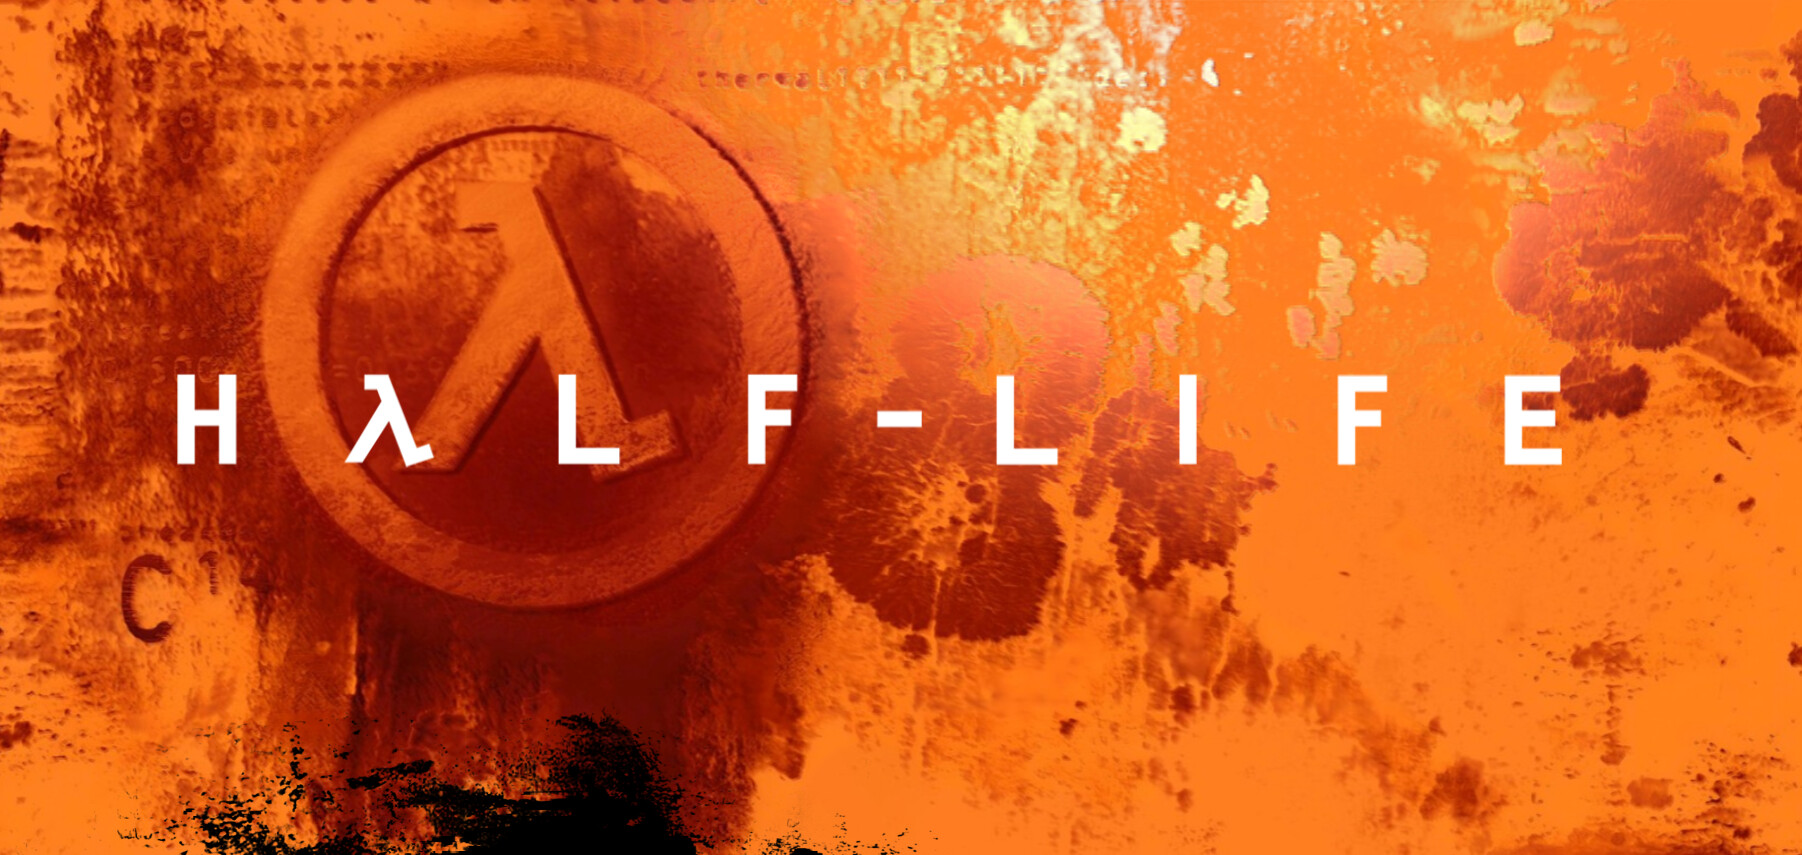 Steam Workshop::Half-Life 2 2004 Day One remake/Pre-Orange Box